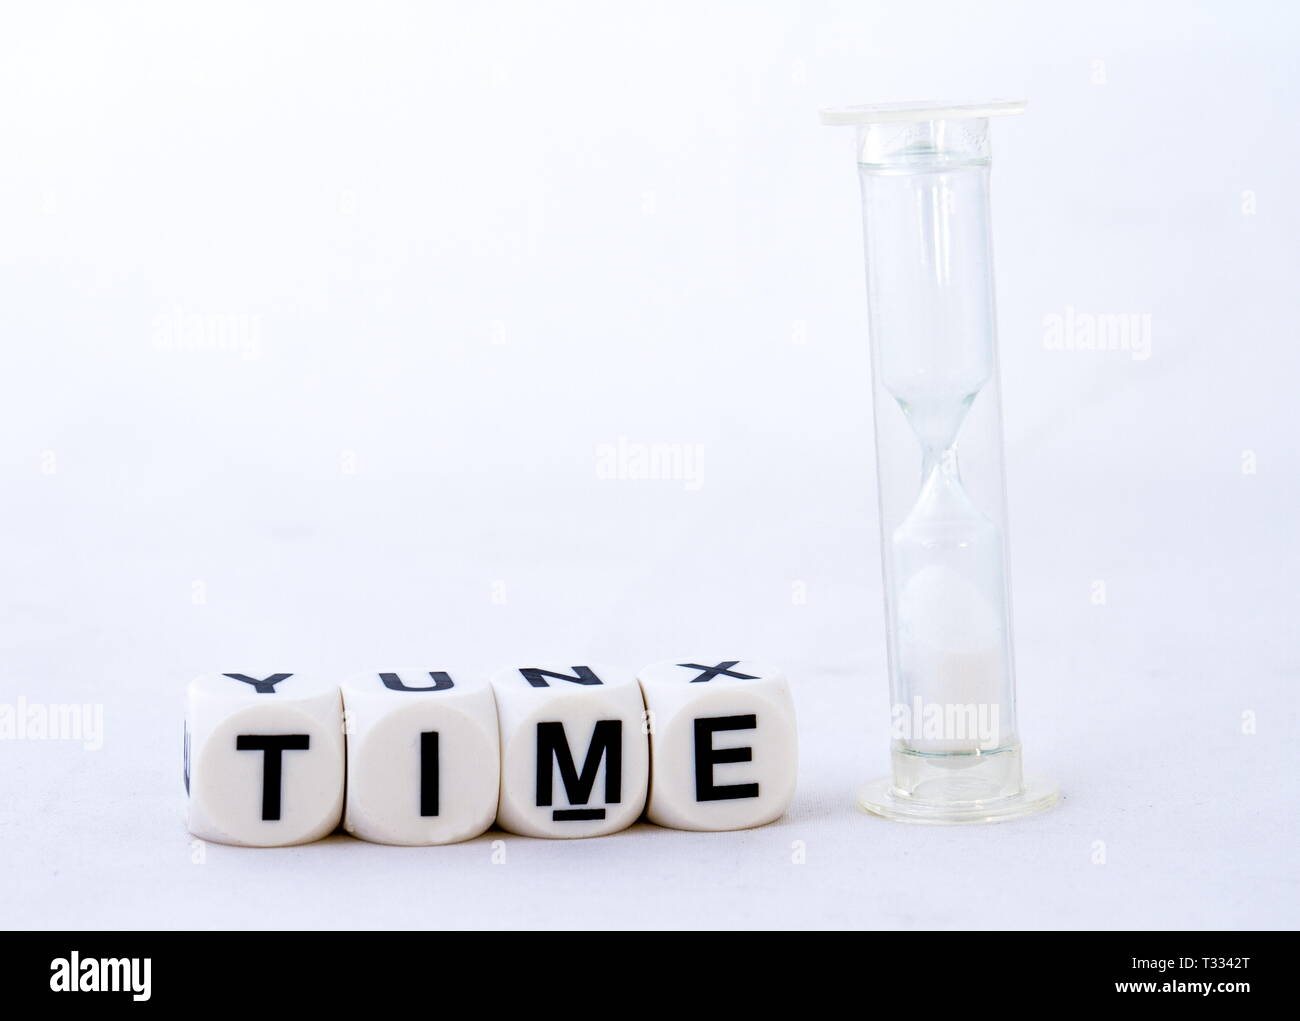 Der Begriff der Zeit in schwarzen Text zusammen mit einer Sanduhr auf weißem Hintergrund Bild mit Kopie Raum isoliert Stockfoto